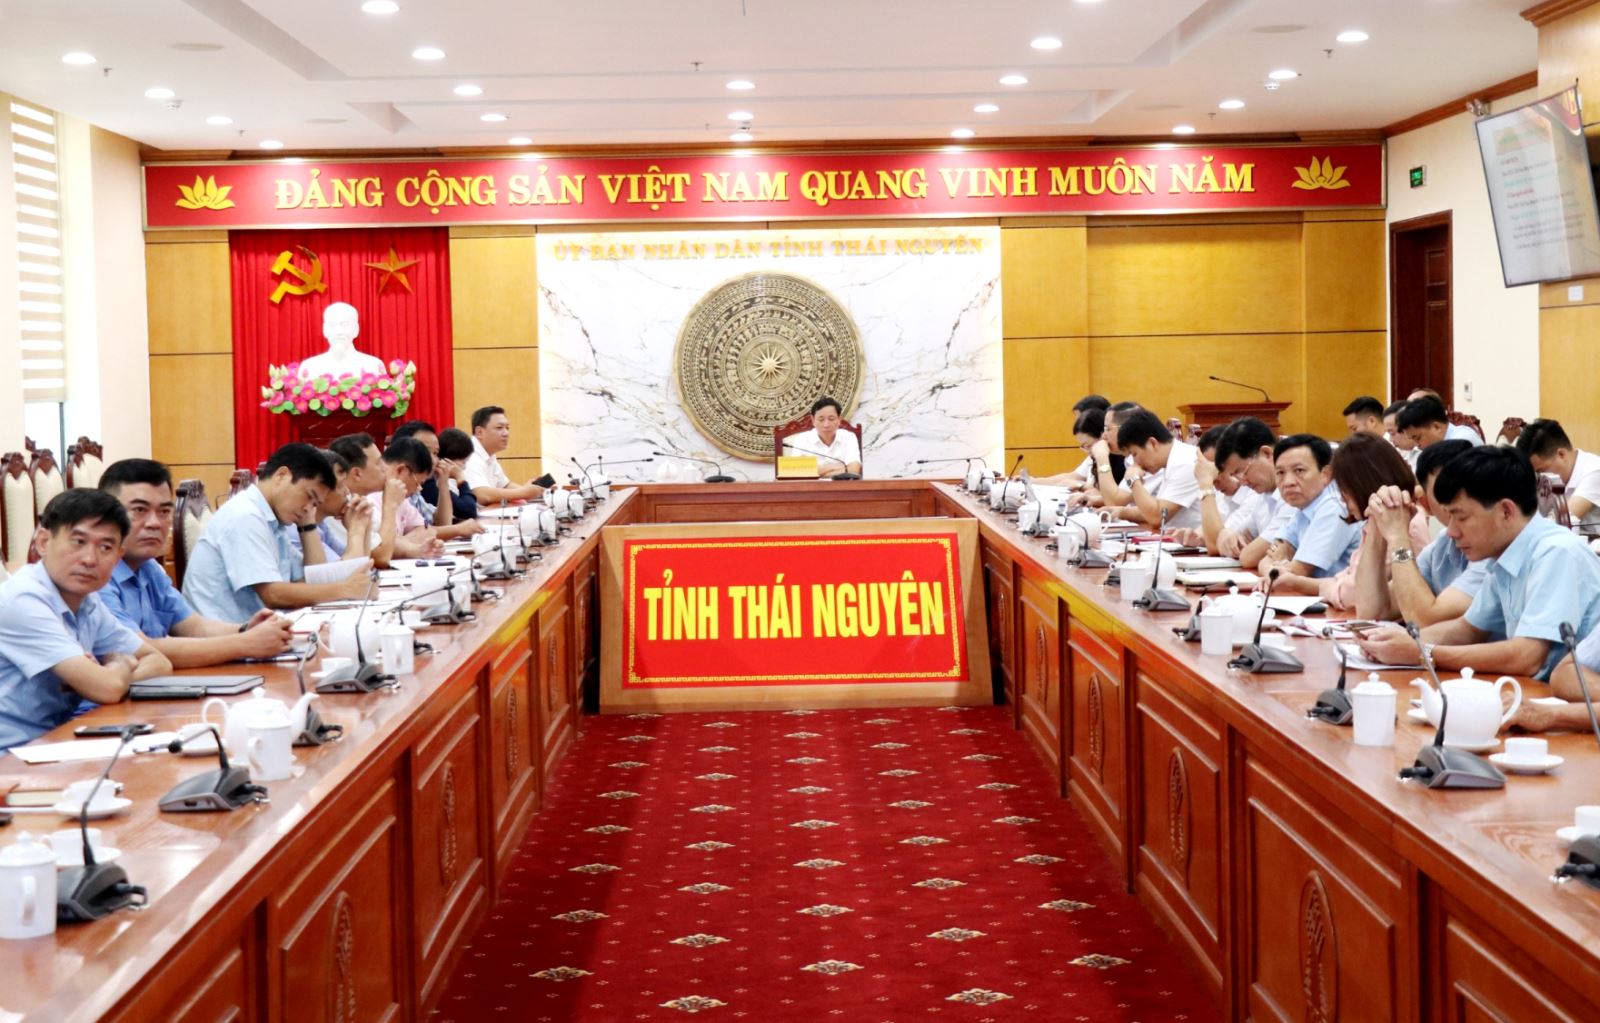  Các đại biểu tham dự Hội nghị tại điểm cầu Thái Nguyên.